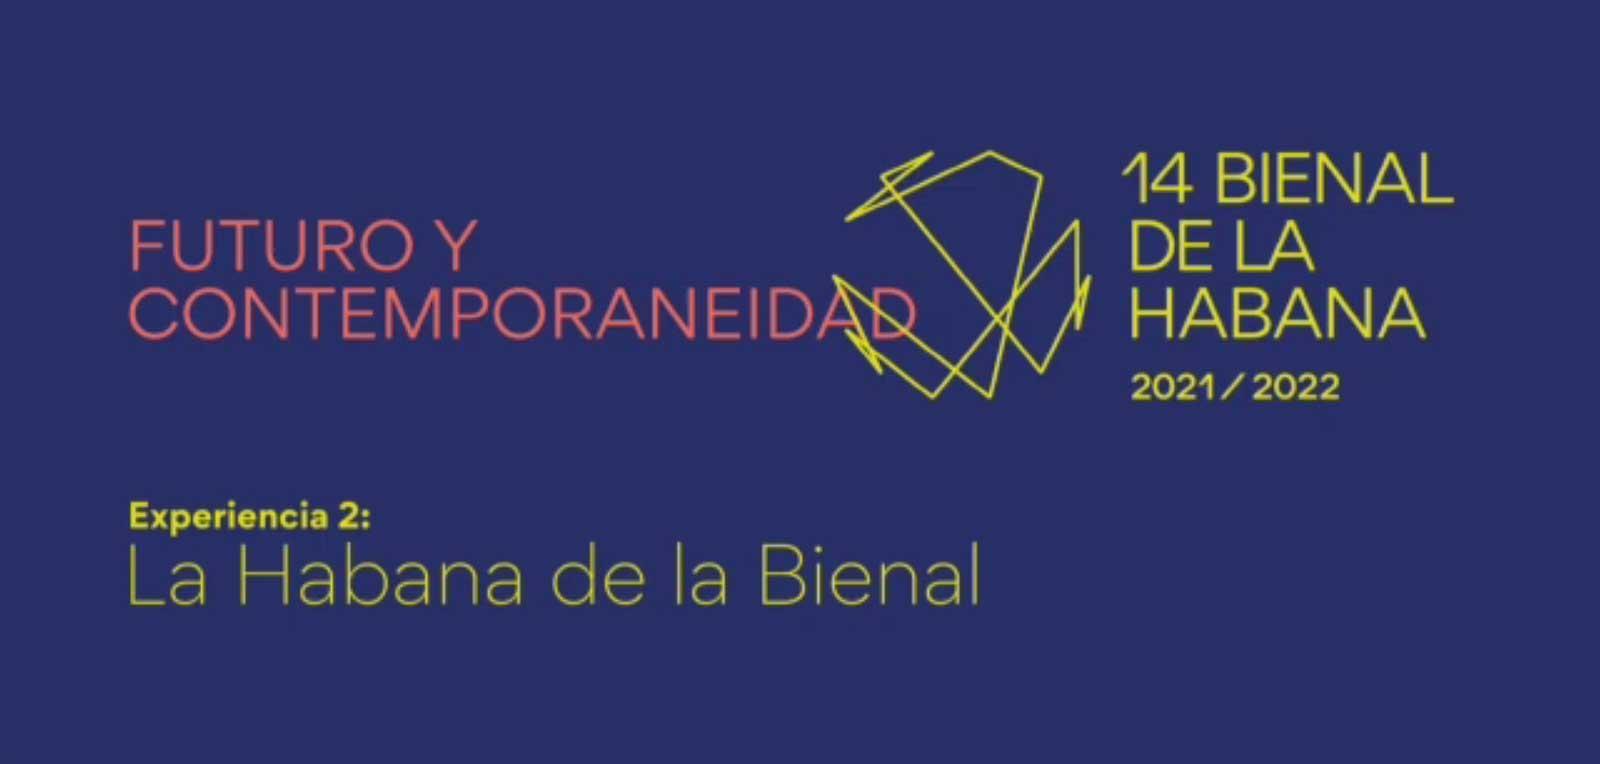 Ratifican realización de 14 bienal de La Habana a partir de noviembre próximo